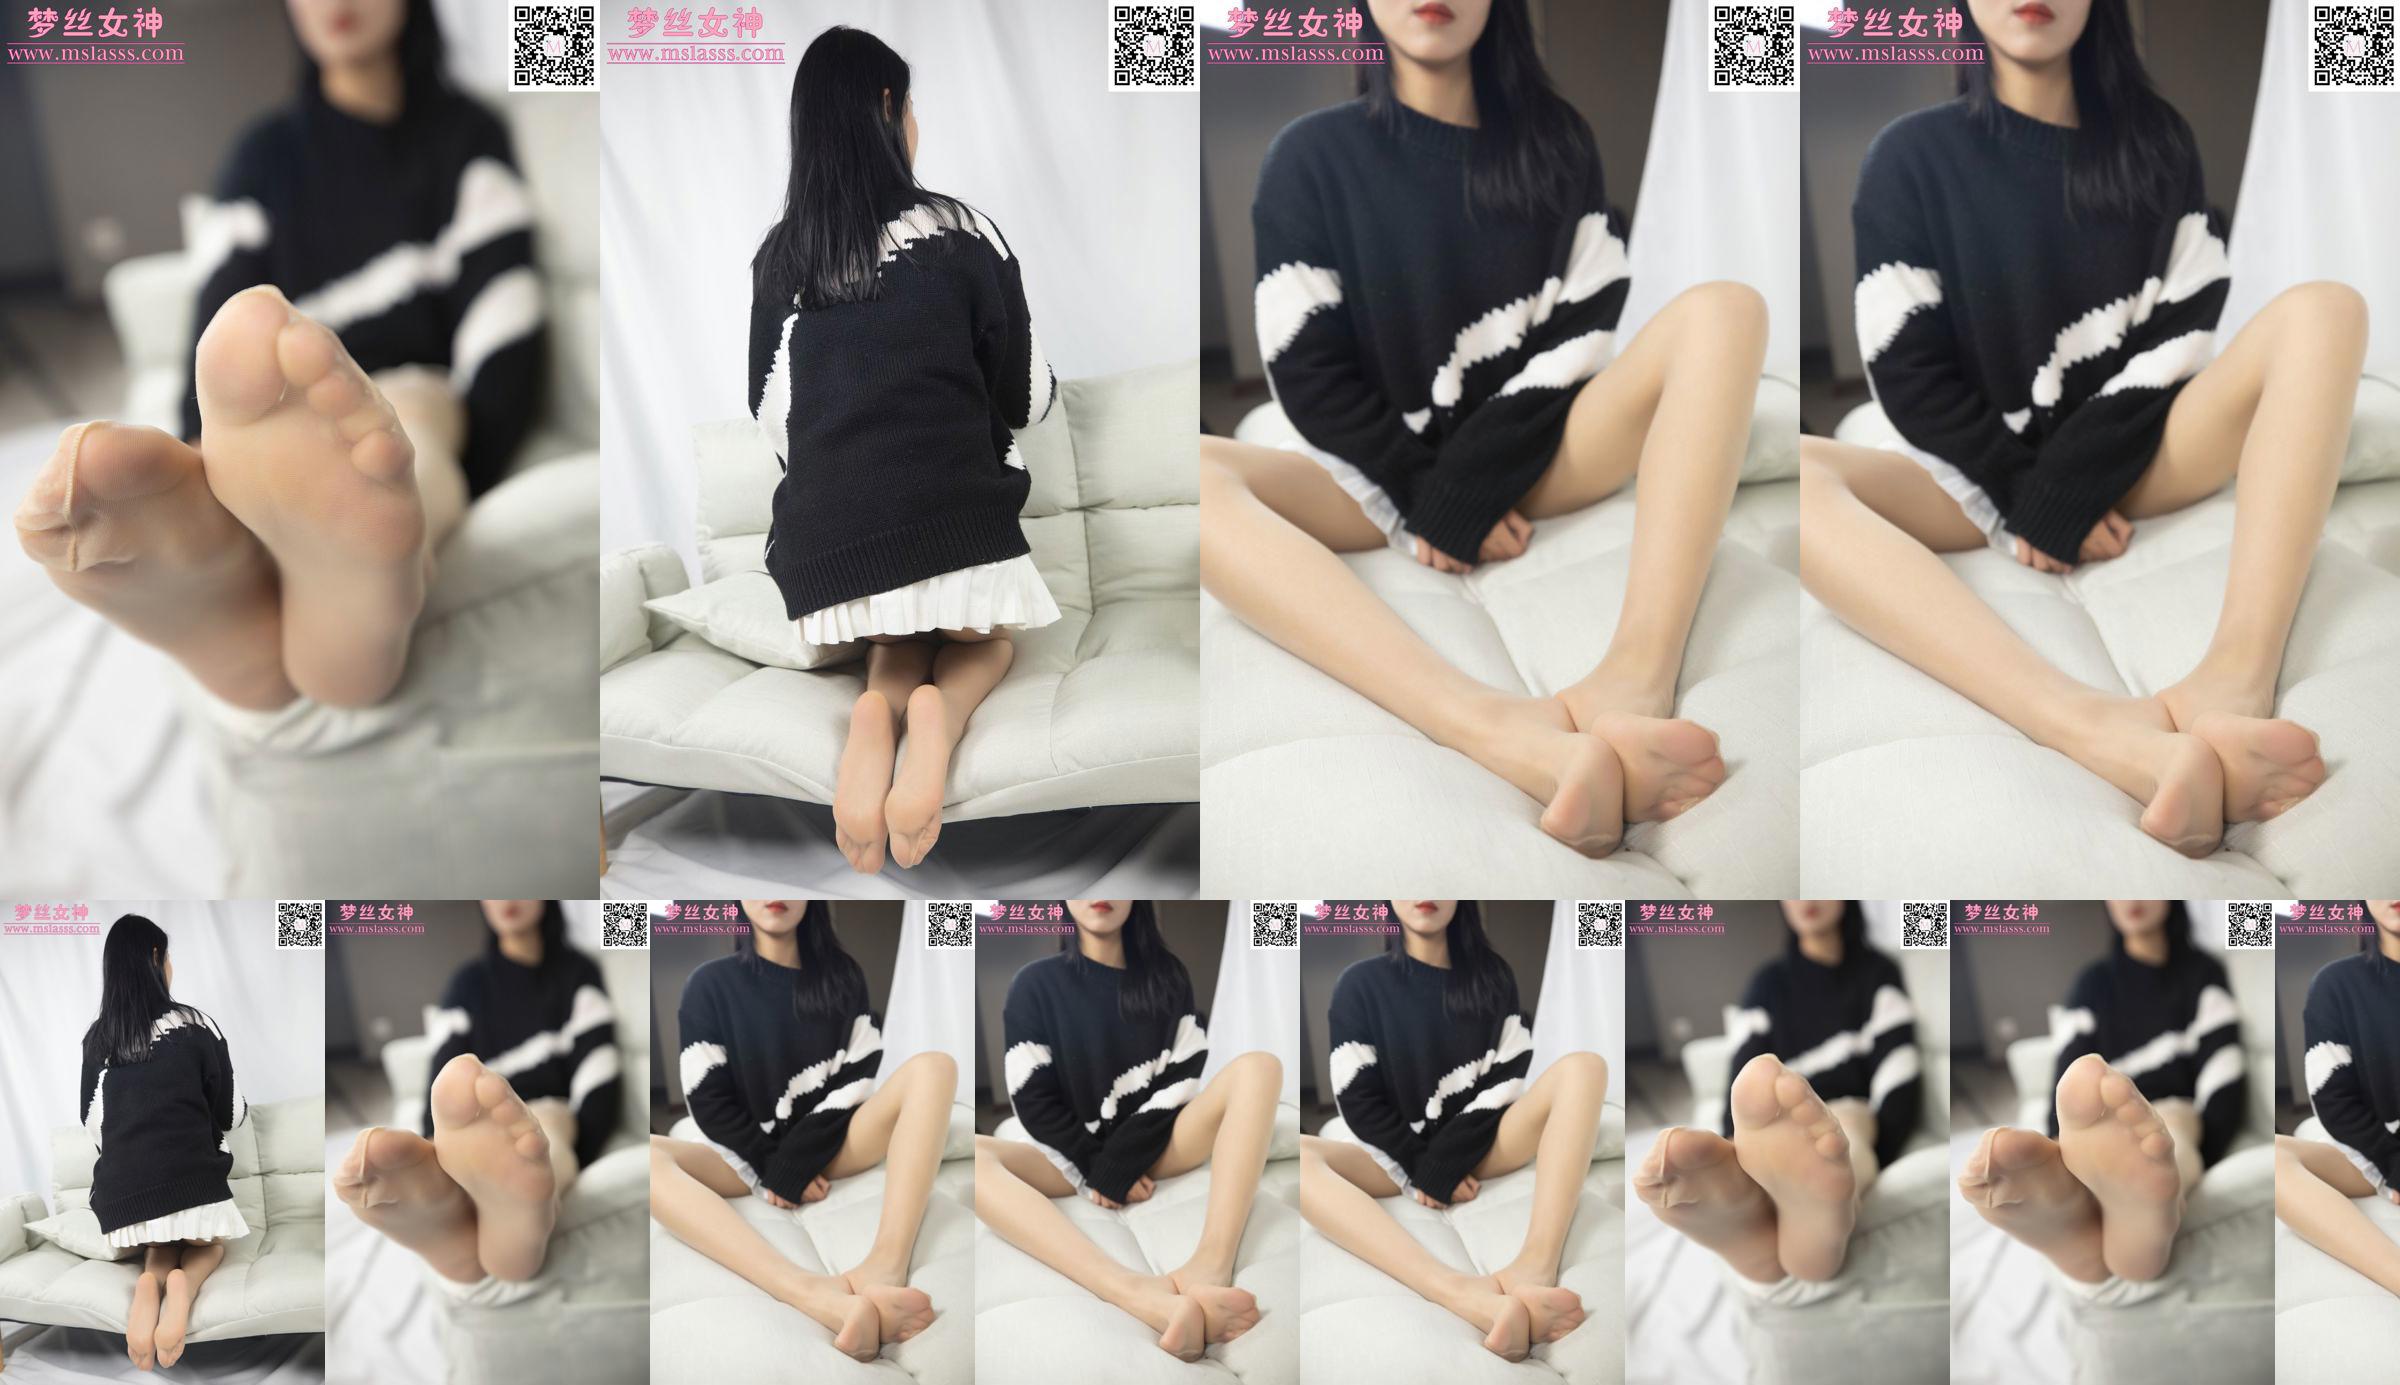 [Deusa dos Sonhos MSLASS] O suéter de Xiaomu não consegue parar suas longas pernas No.09eca8 Página 1